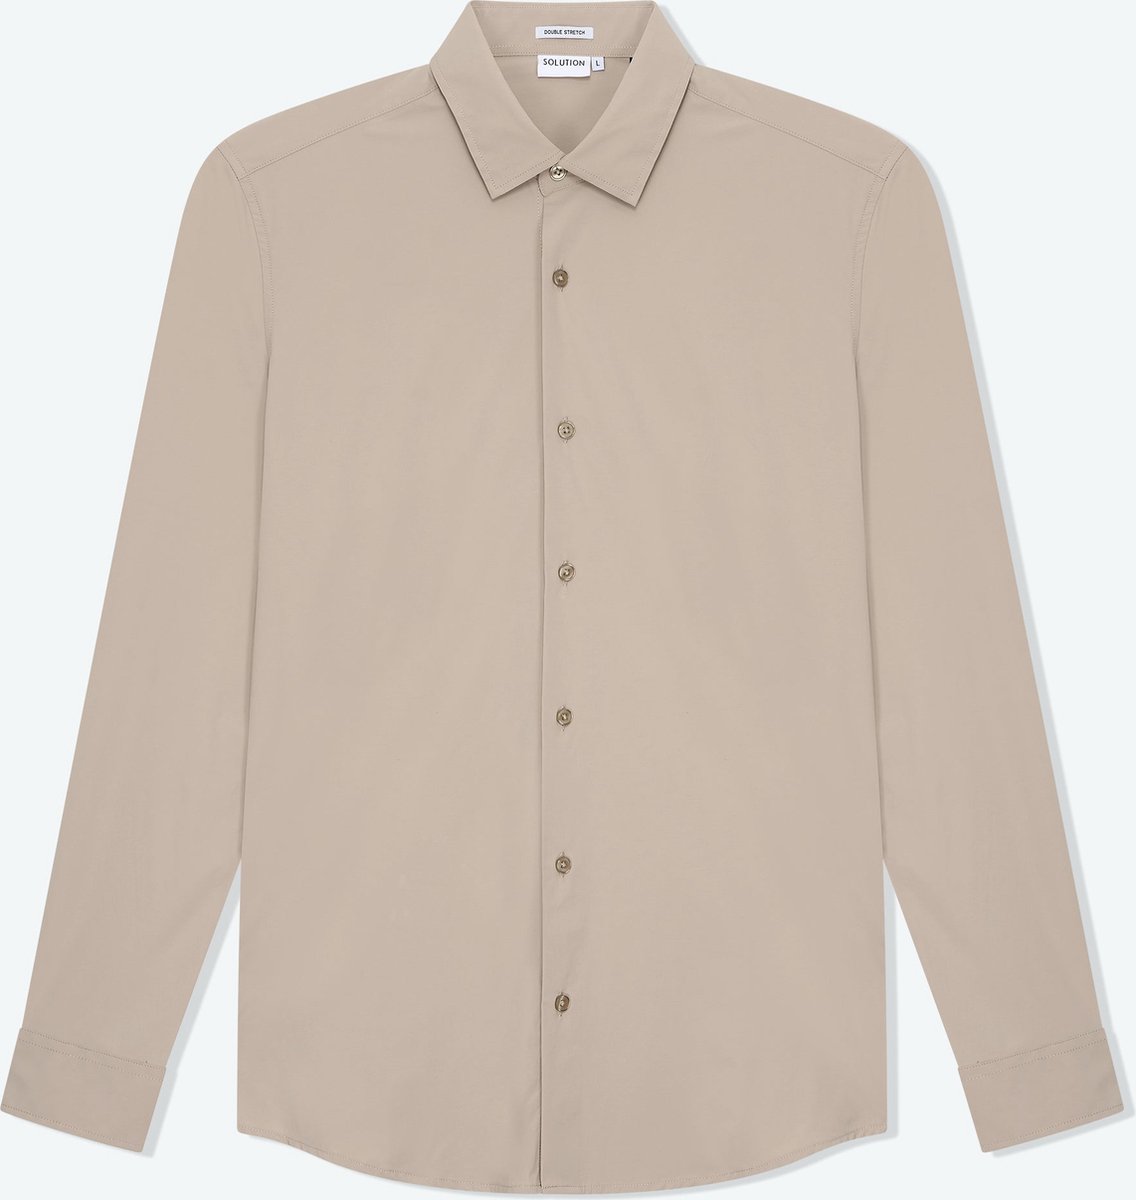 Solution Clothing Felix - Casual Overhemd - Kreukvrij - Lange Mouw - Volwassenen - Heren - Mannen - Beige - S - S - Solution Clothing